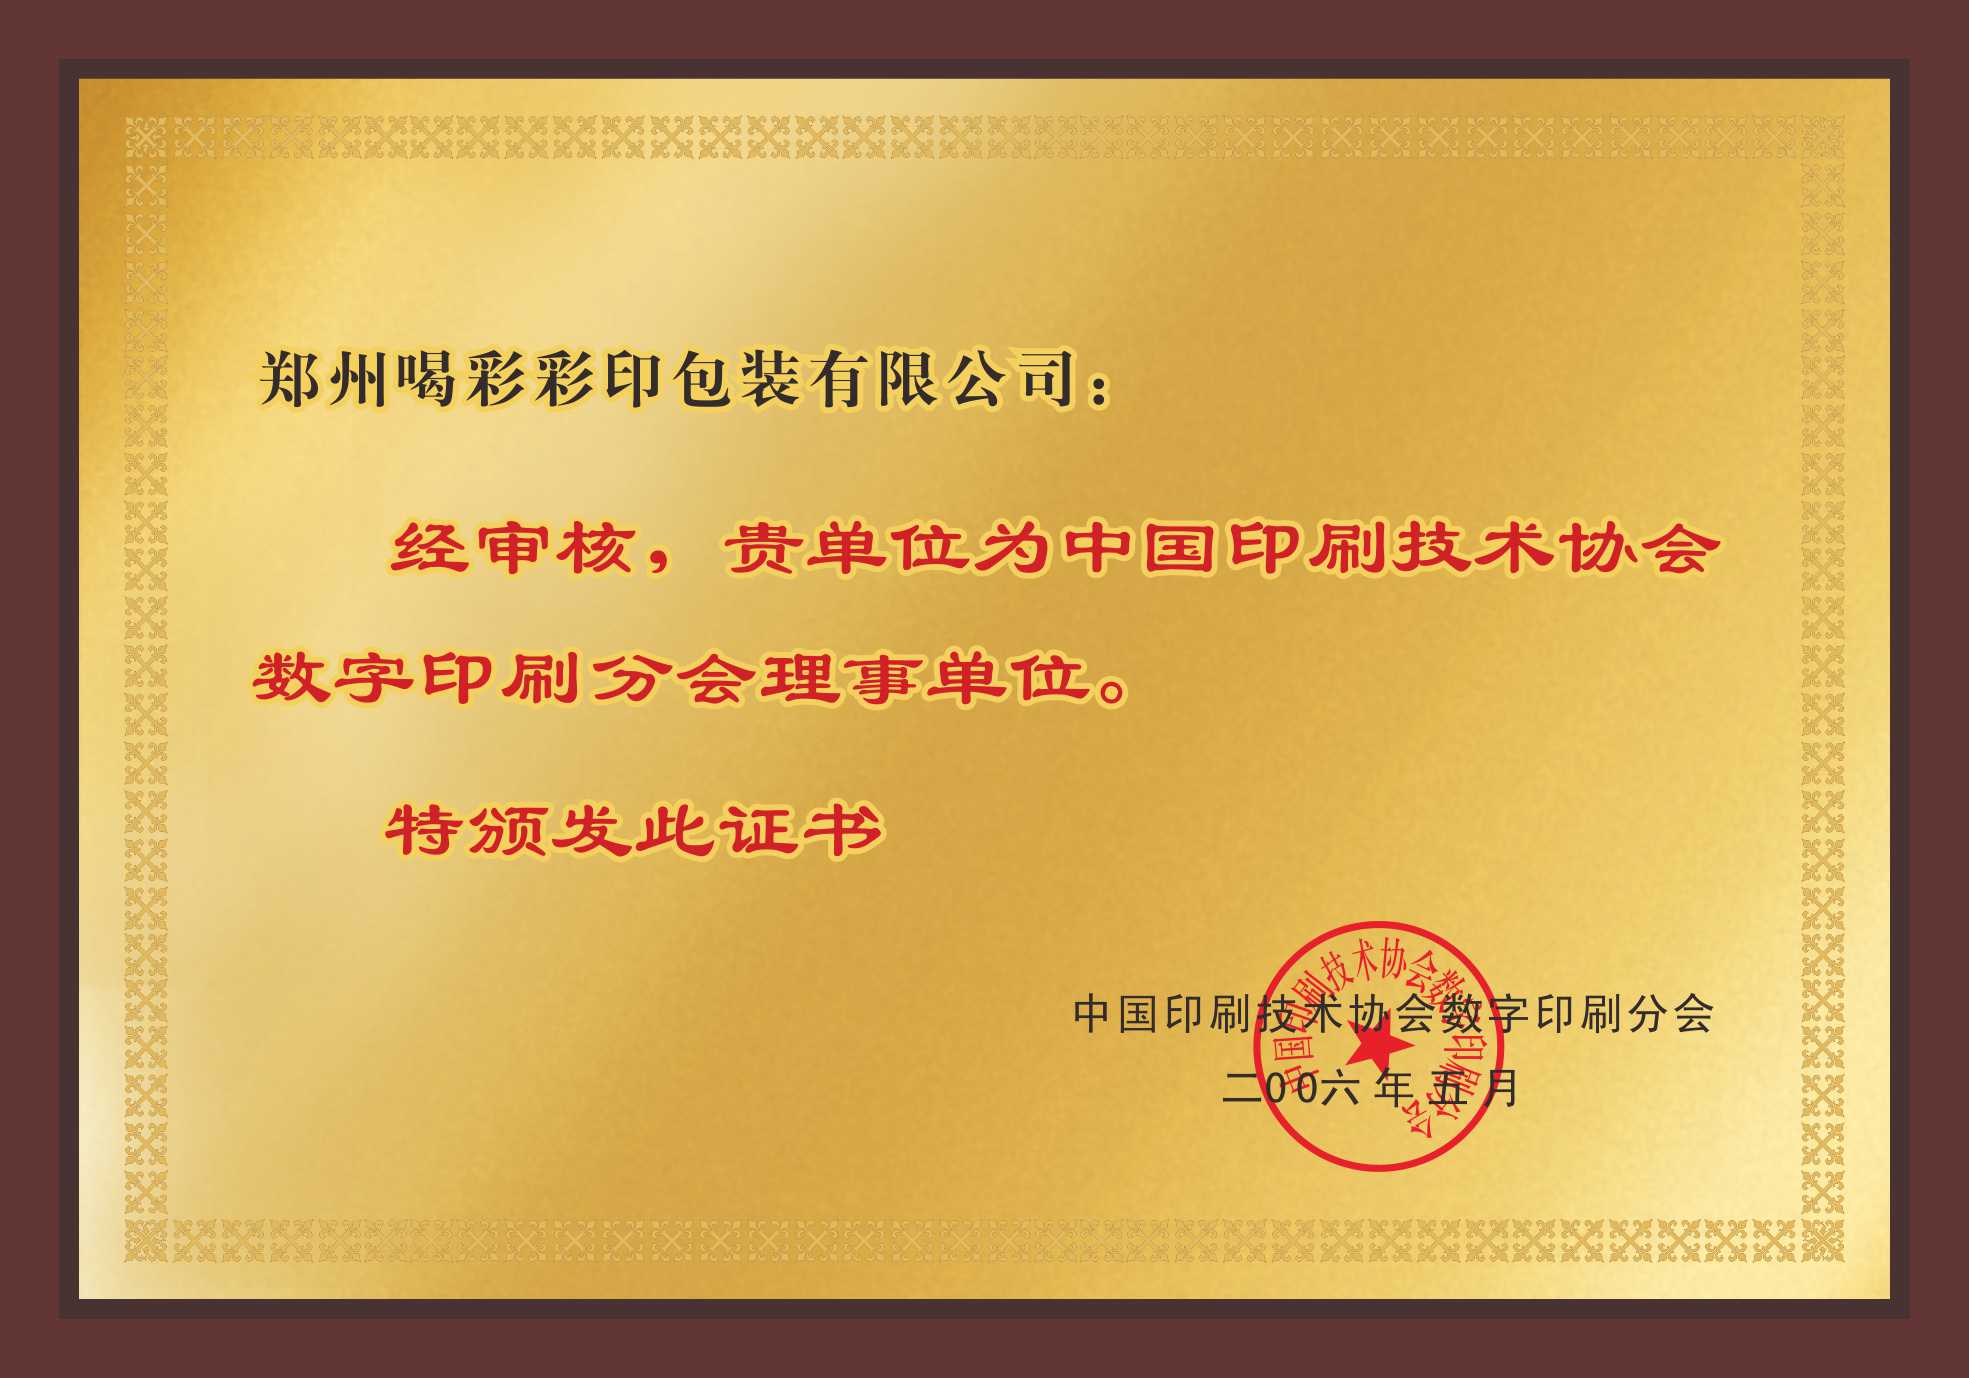 中國印刷技術協會數字印刷分會理事單位